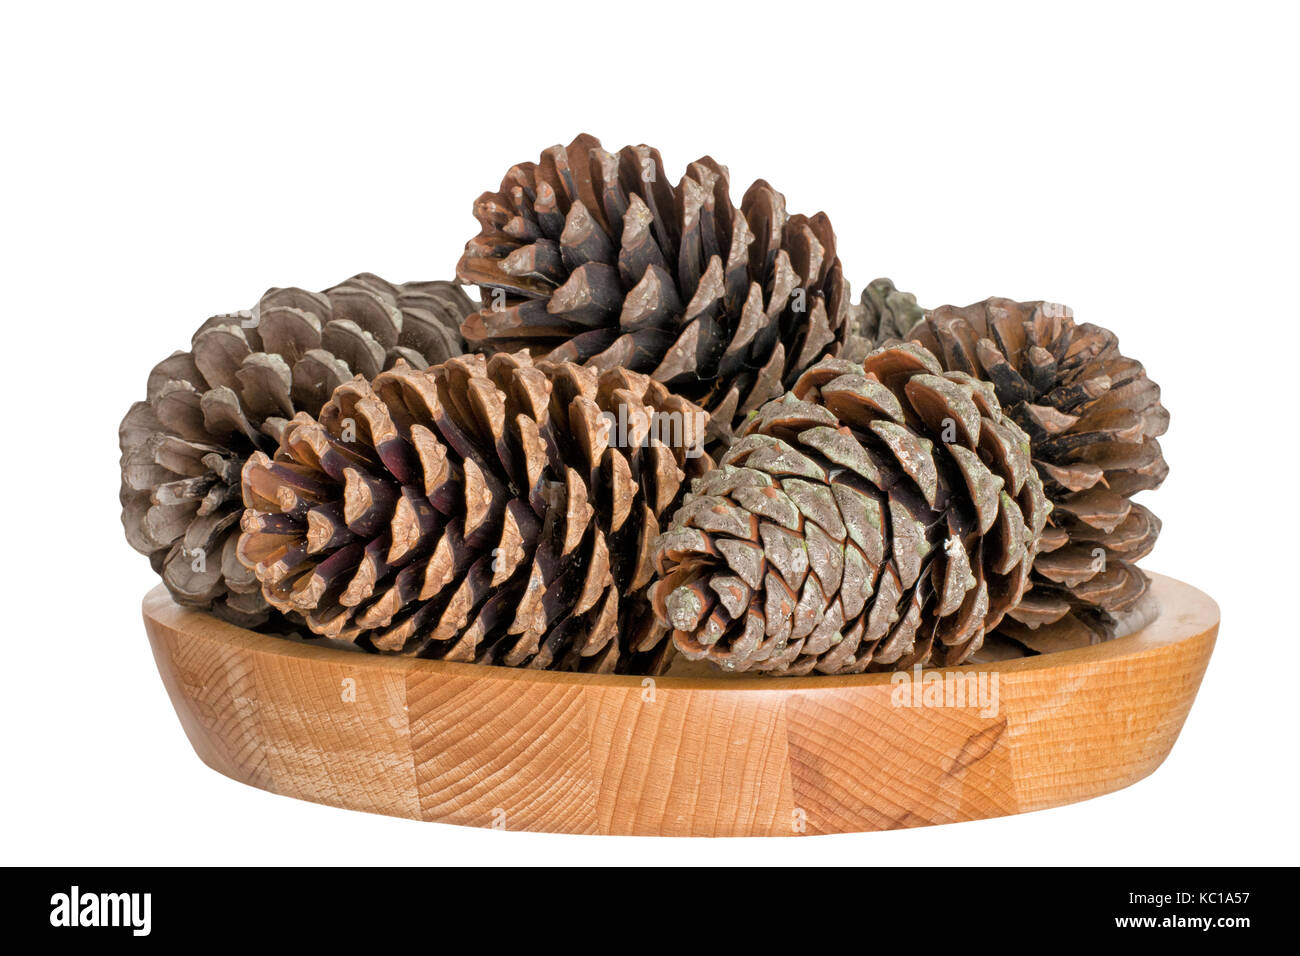 Los conos de pino, invierno o temporada festiva decoración. Foto de stock